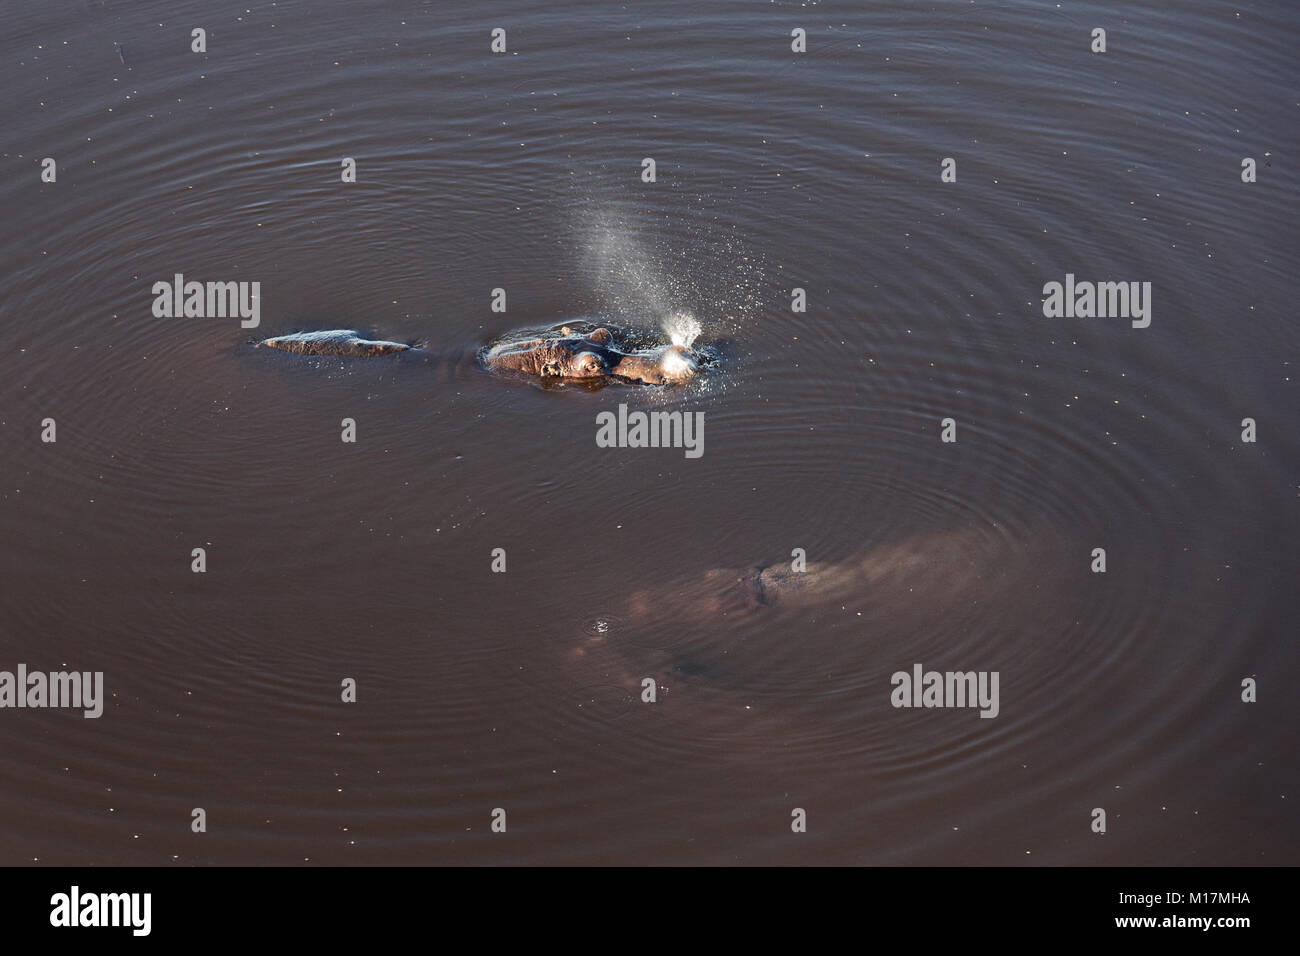 Hippo vu de dessus au cours de helicopterflight, Khwai, delta de l'Okavango au Botswana, pulvériser de l'eau à prendre dans l'air Banque D'Images